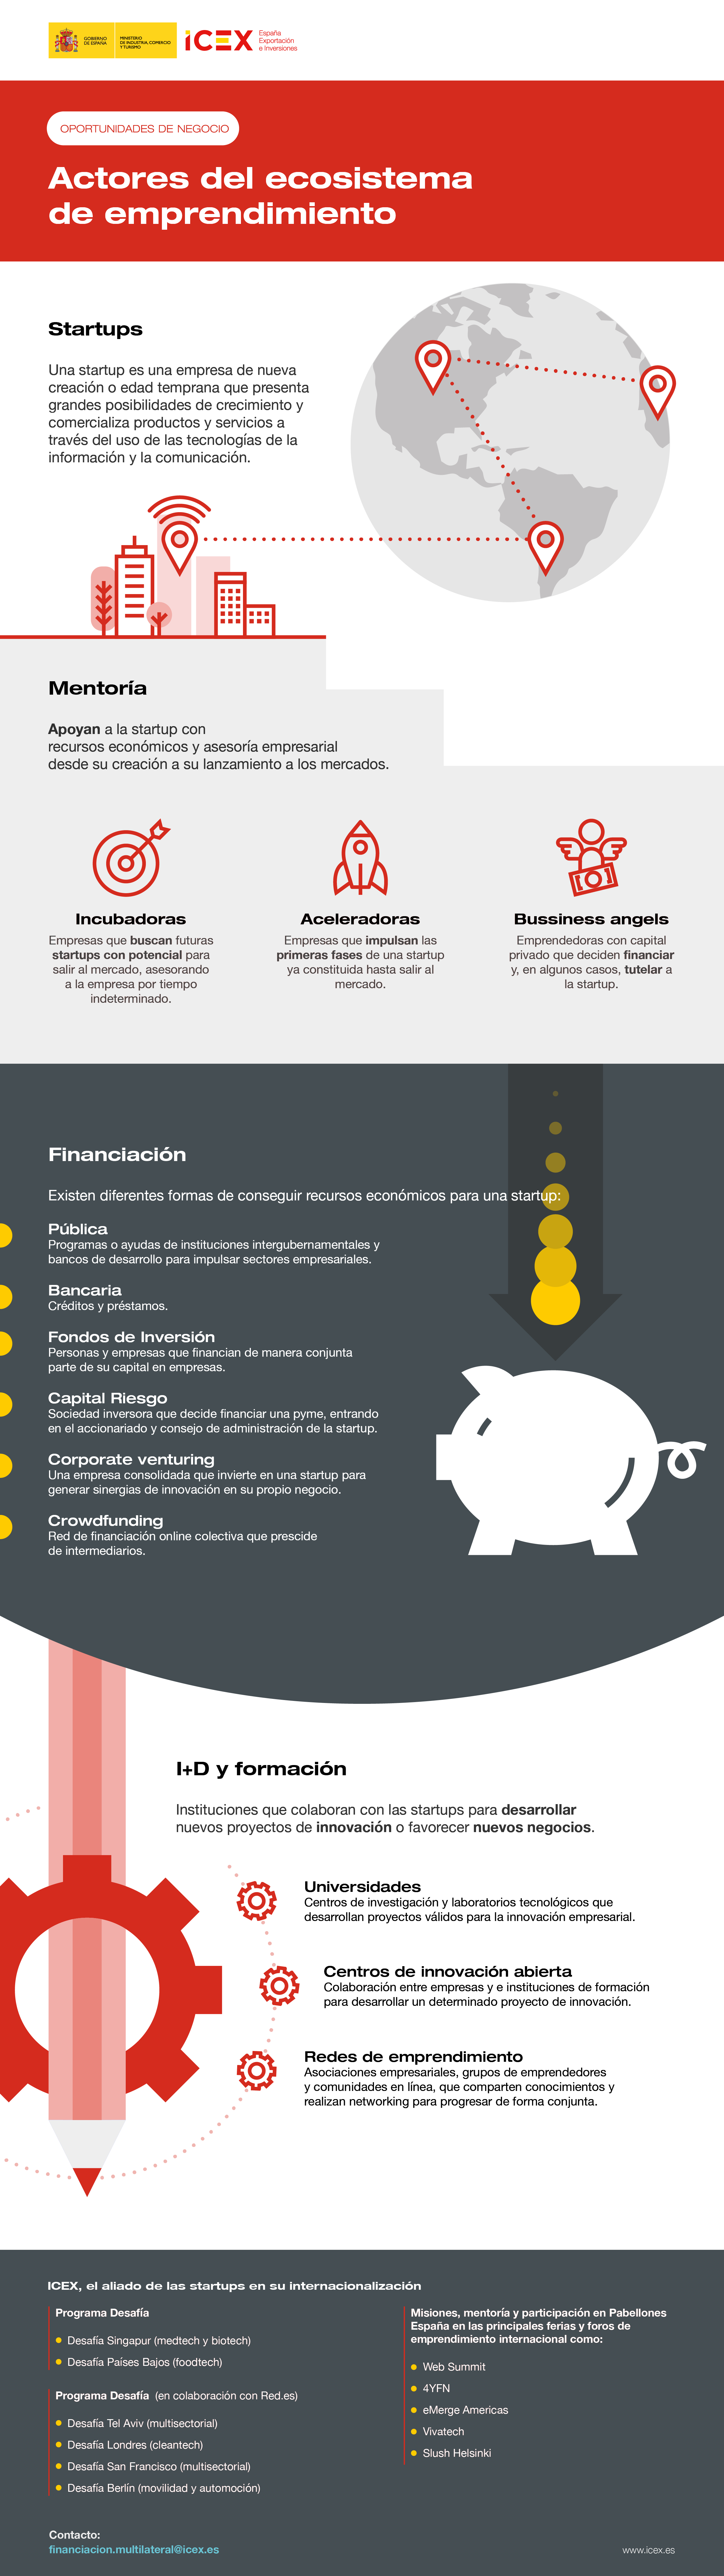 Infografía que describe cuáles son los distintos actores del ecosistema de emprendimiento, principalmente en el sector tecnológico